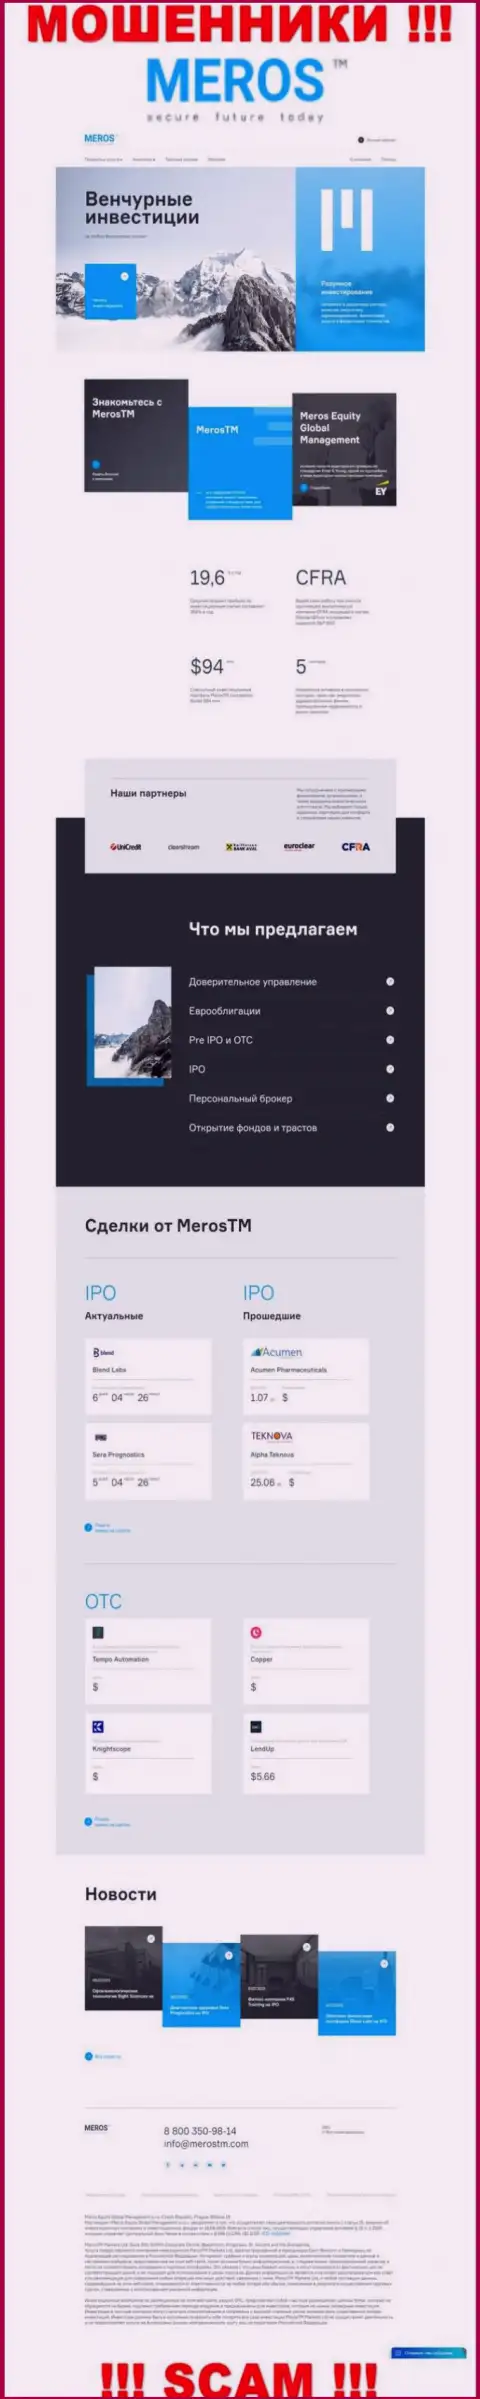 Обзор официального информационного портала жуликов Meros TM